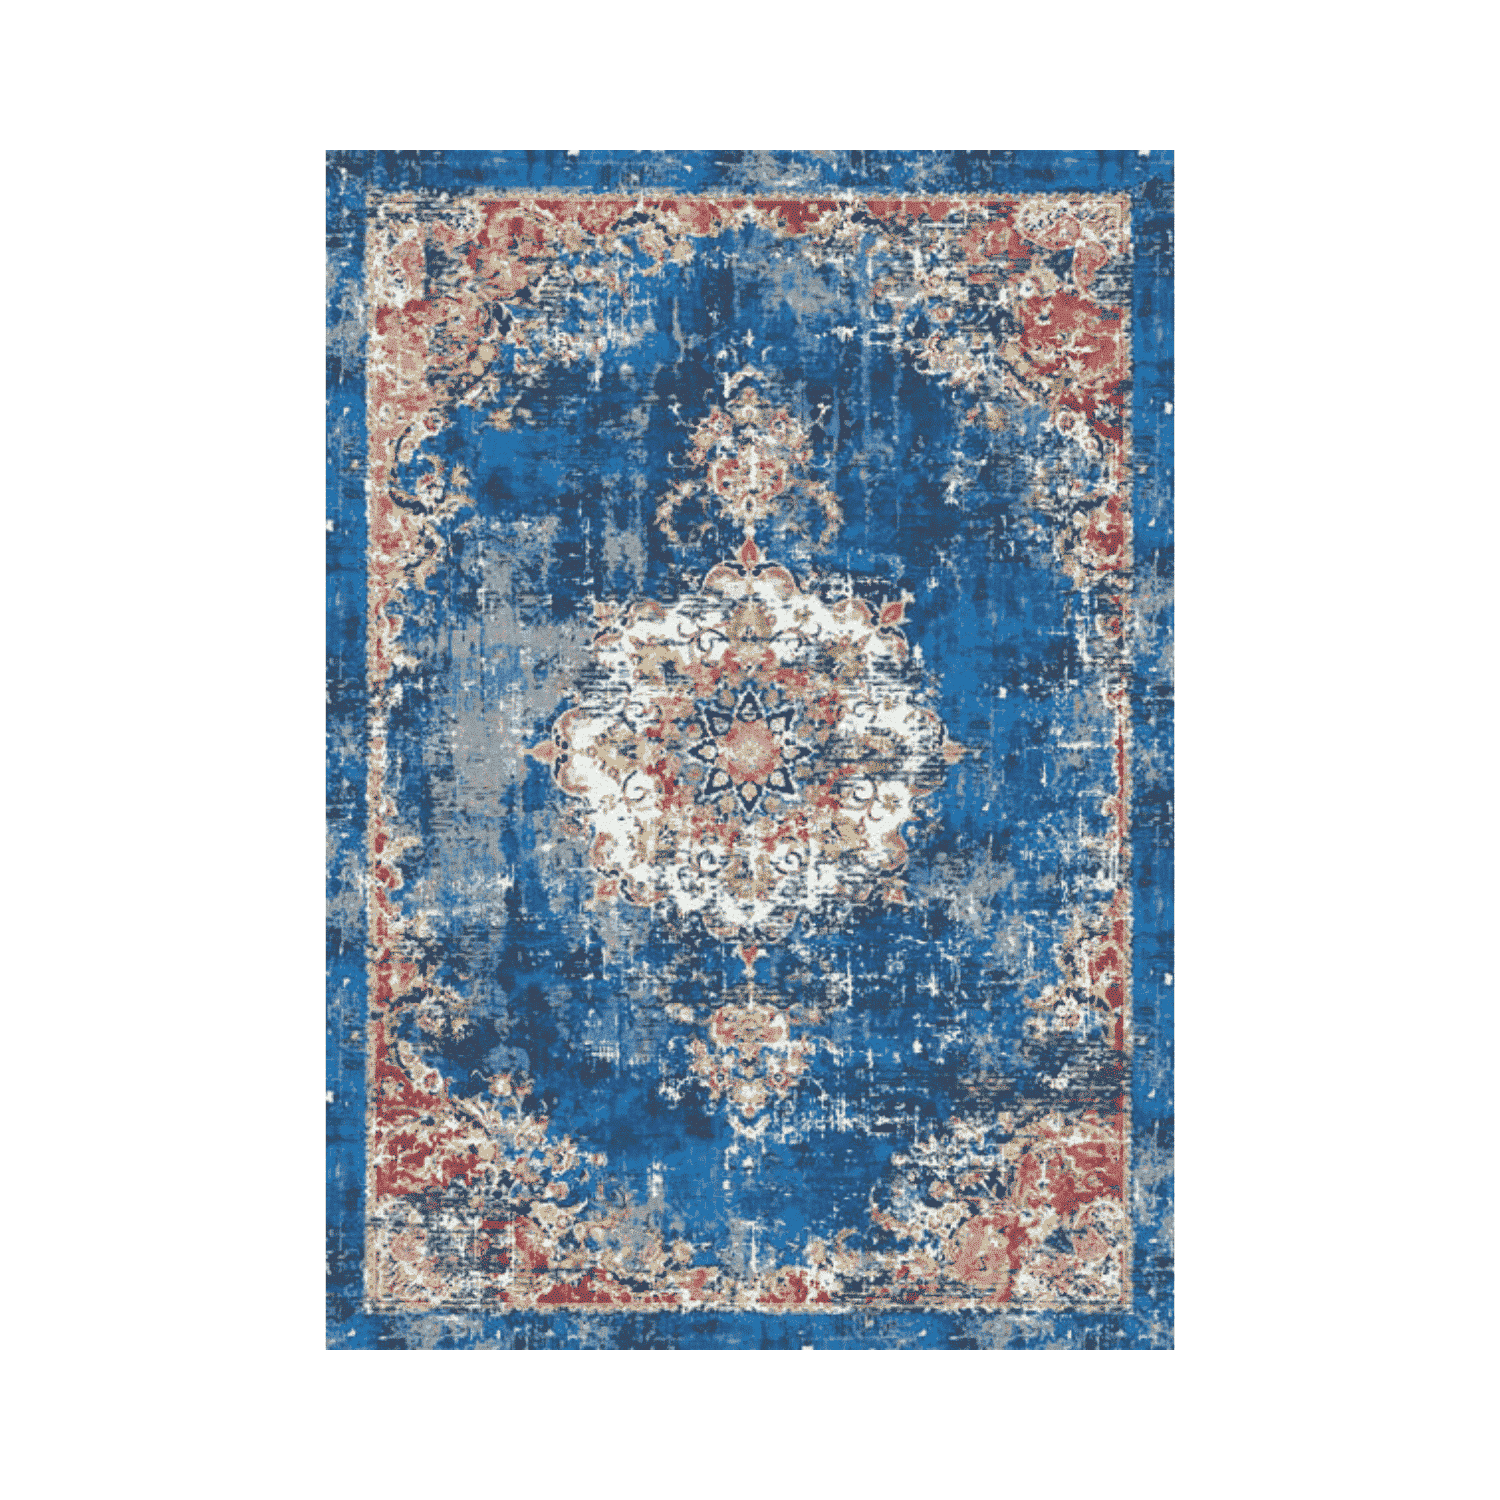 affresco-tappeto-arredo-emozioni-artista-arabo-medaglione-blu-multicolor-front